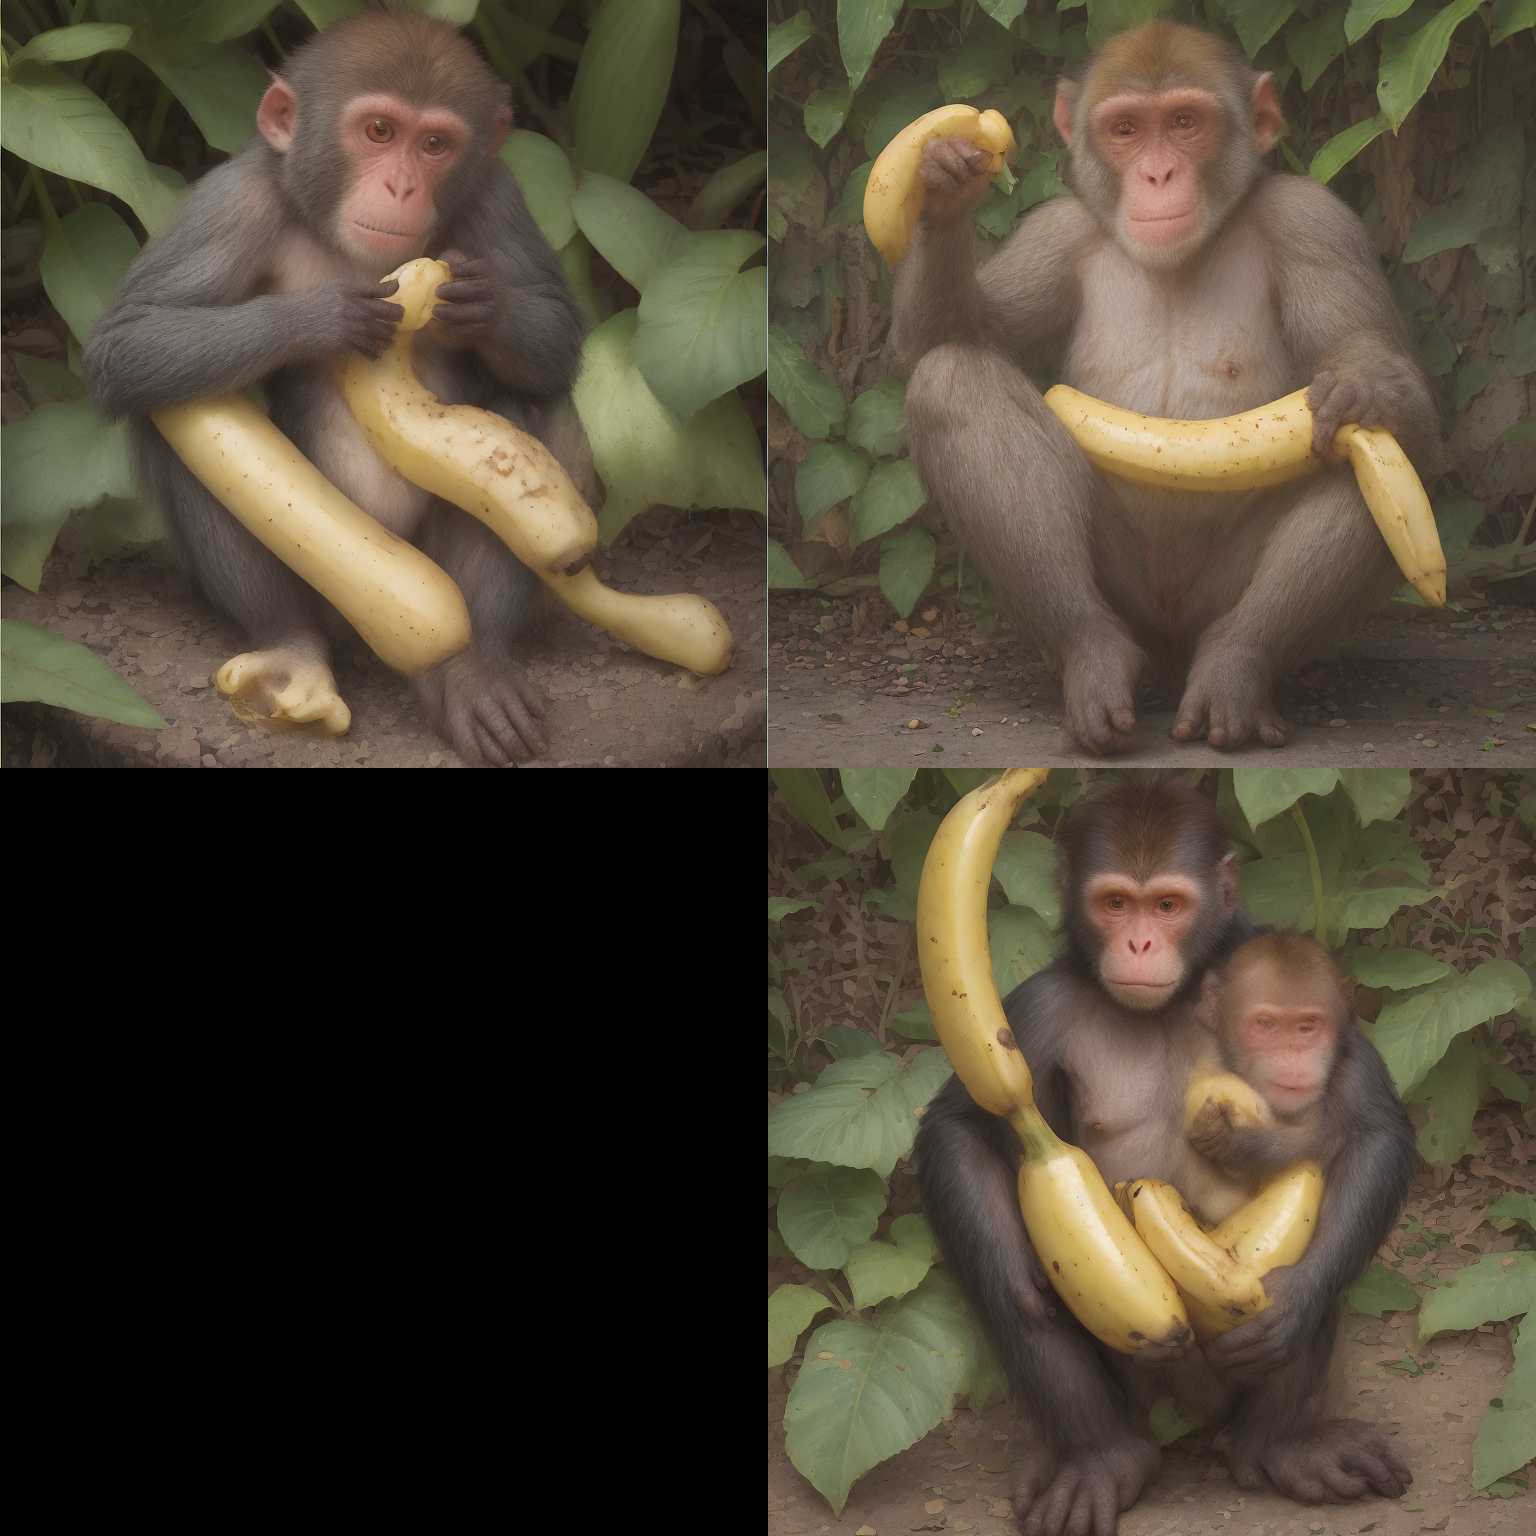 A monkey holding a banana